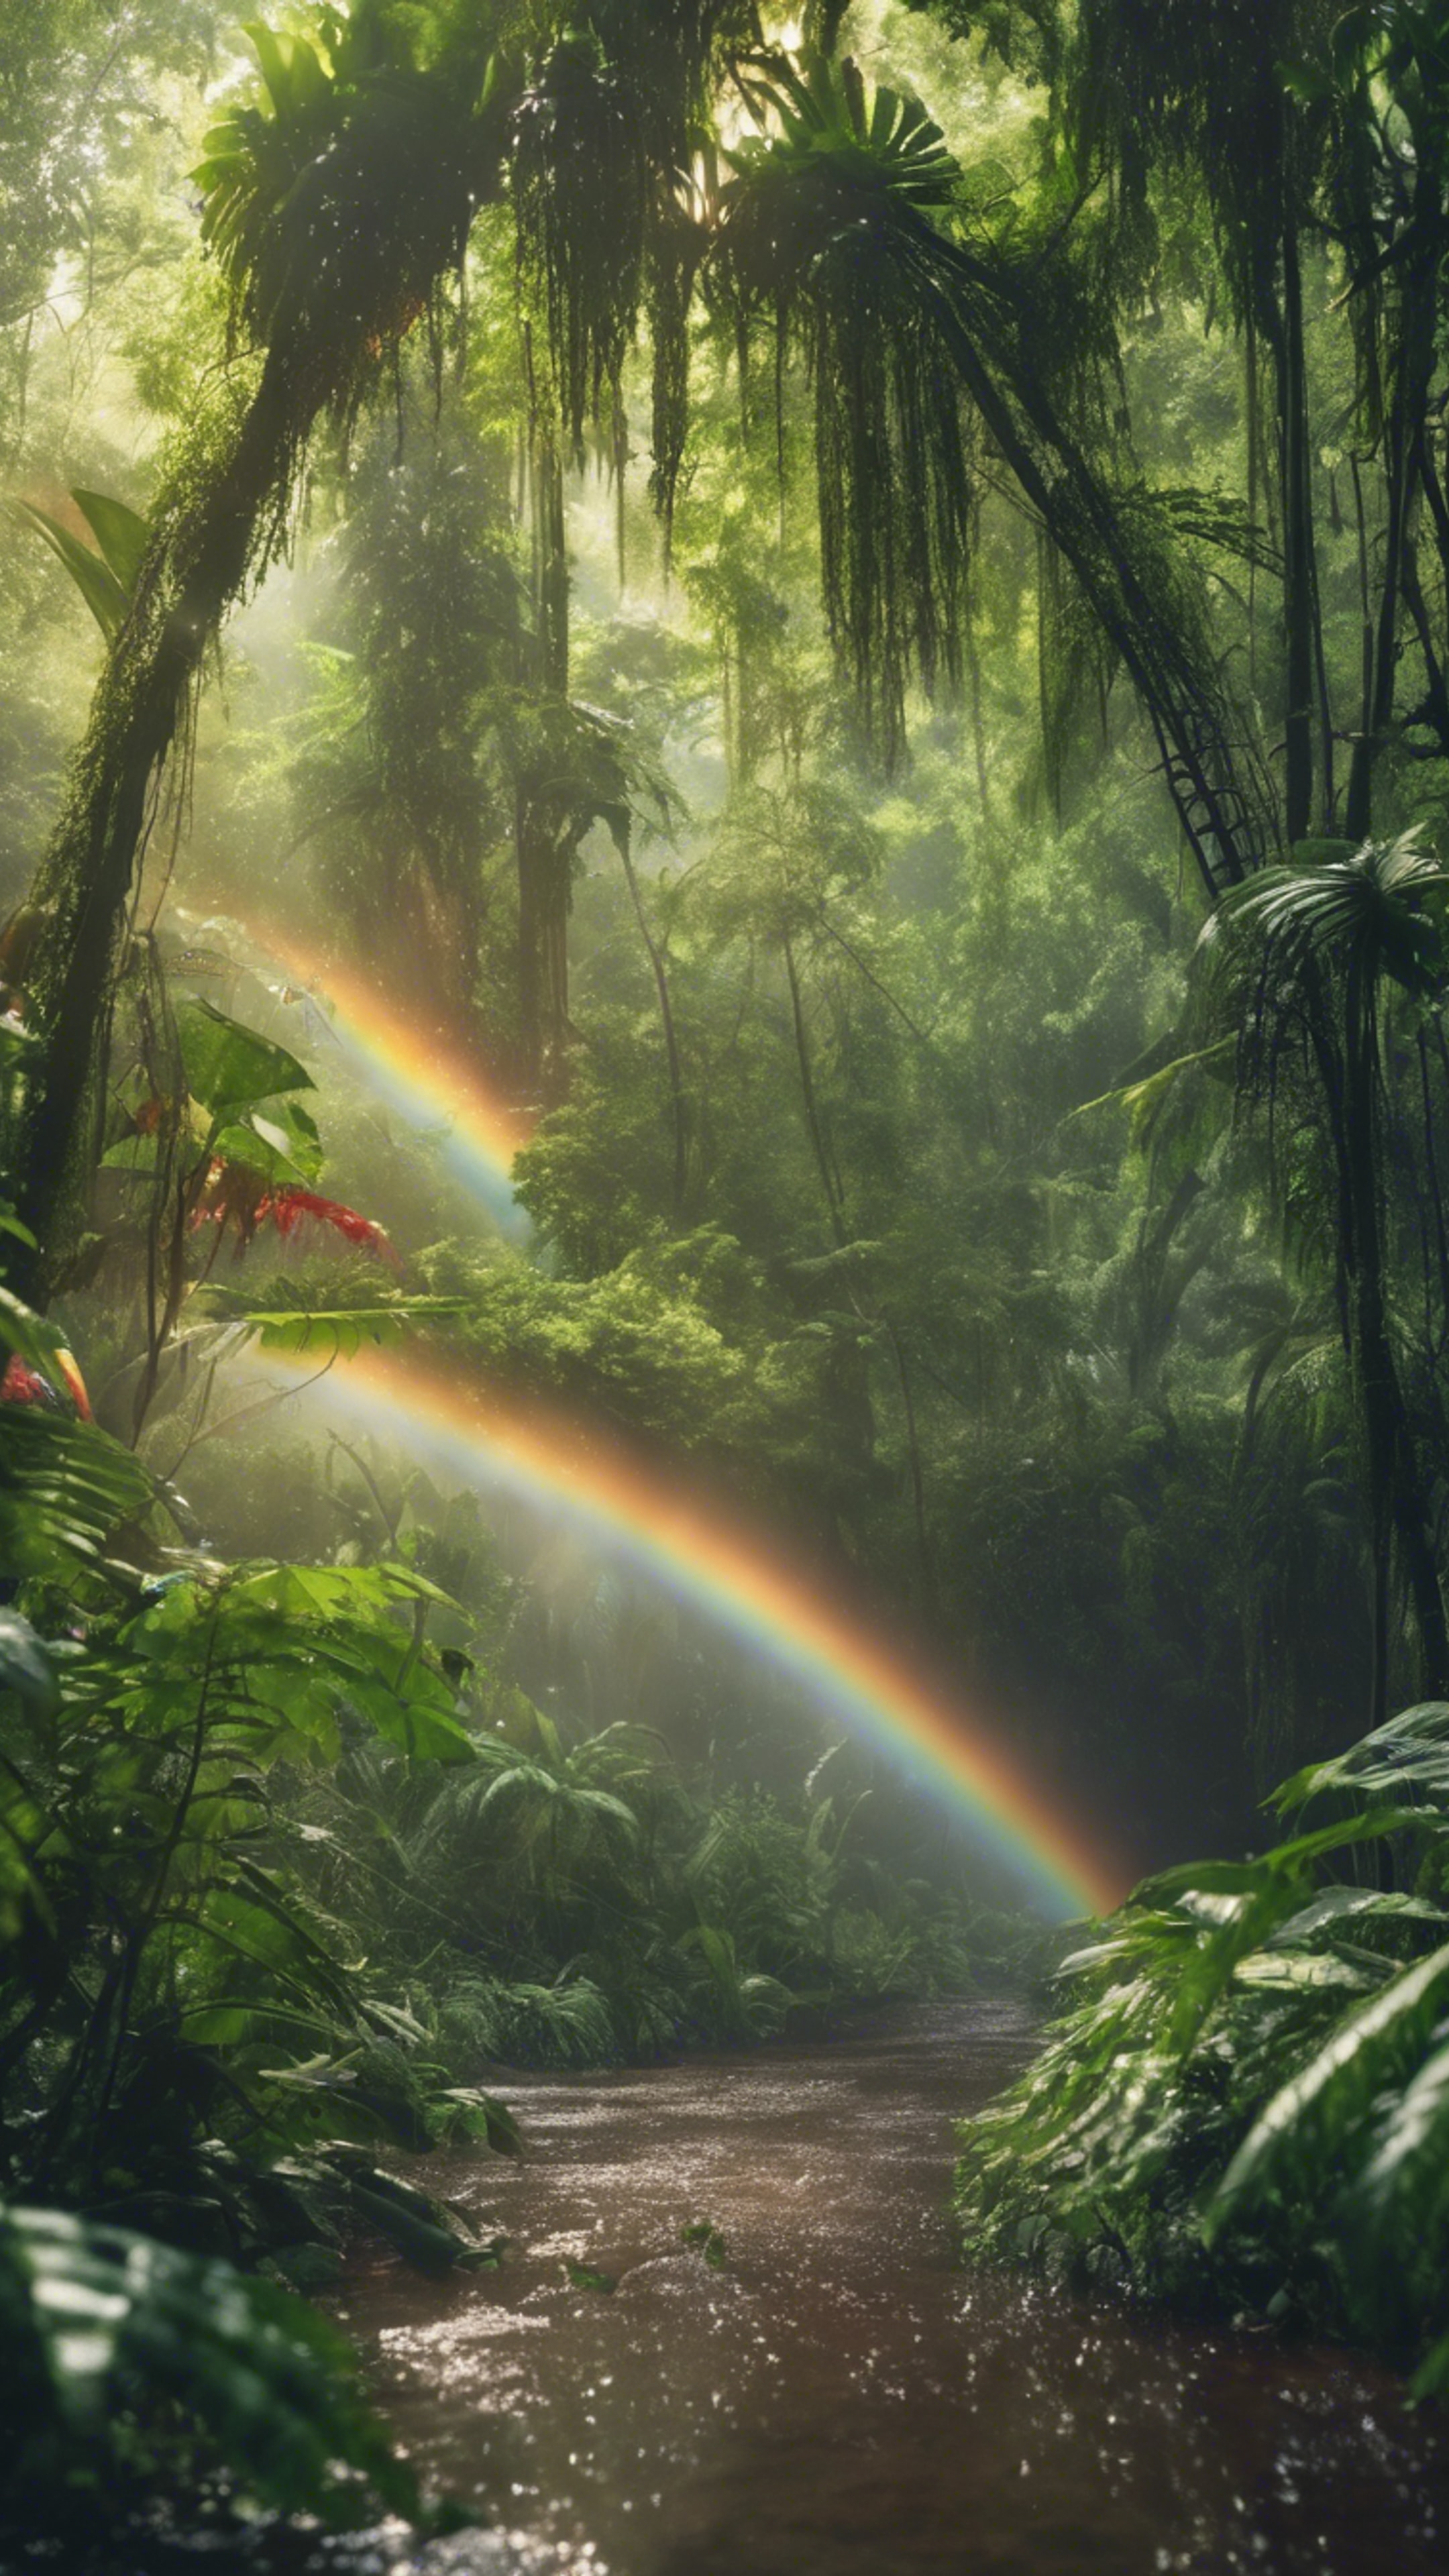 A lush, green rainforest glistening under a rainbow after a summer shower. Sfondo[0e0a5e65f97649b38163]